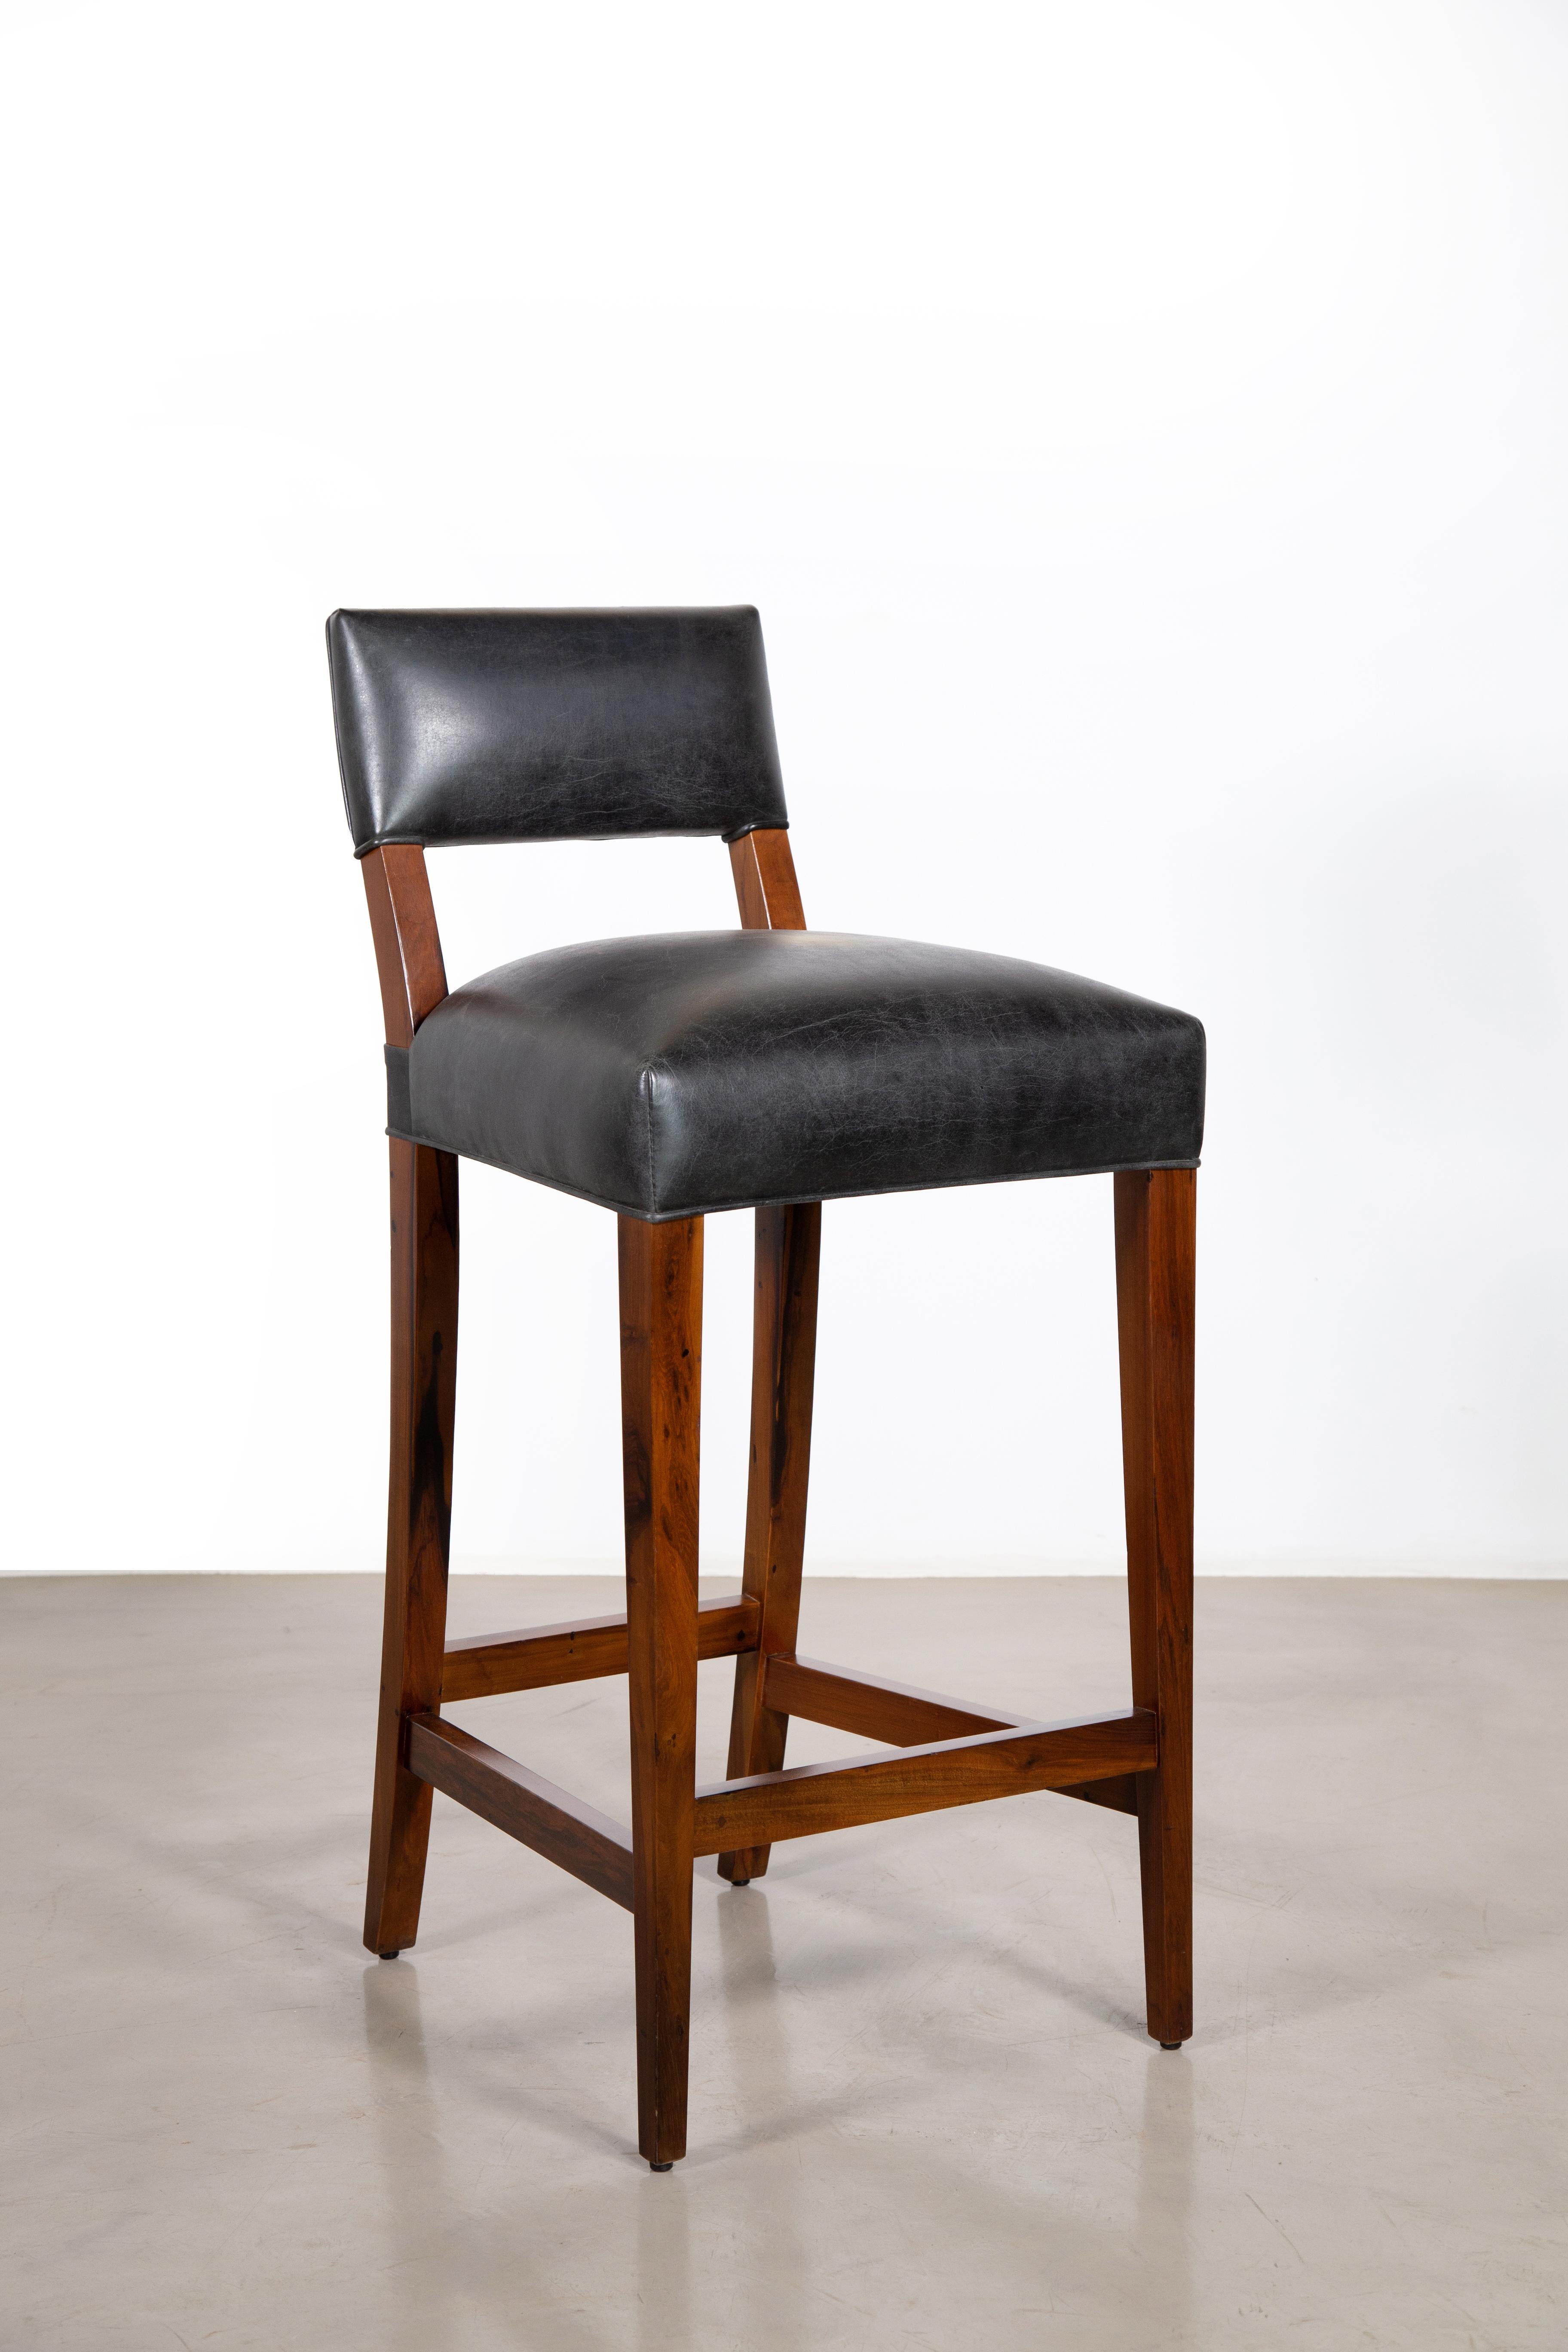 Costantini ist stolz darauf, die schönsten und härtesten Harthölzer für die Herstellung seiner Sitzmöbel zu verwenden.  Der Neto Hocker hat ein sanft geschwungenes, relativ niedriges hinteres Bein, mit schlanken, geraden vorderen Beinen und